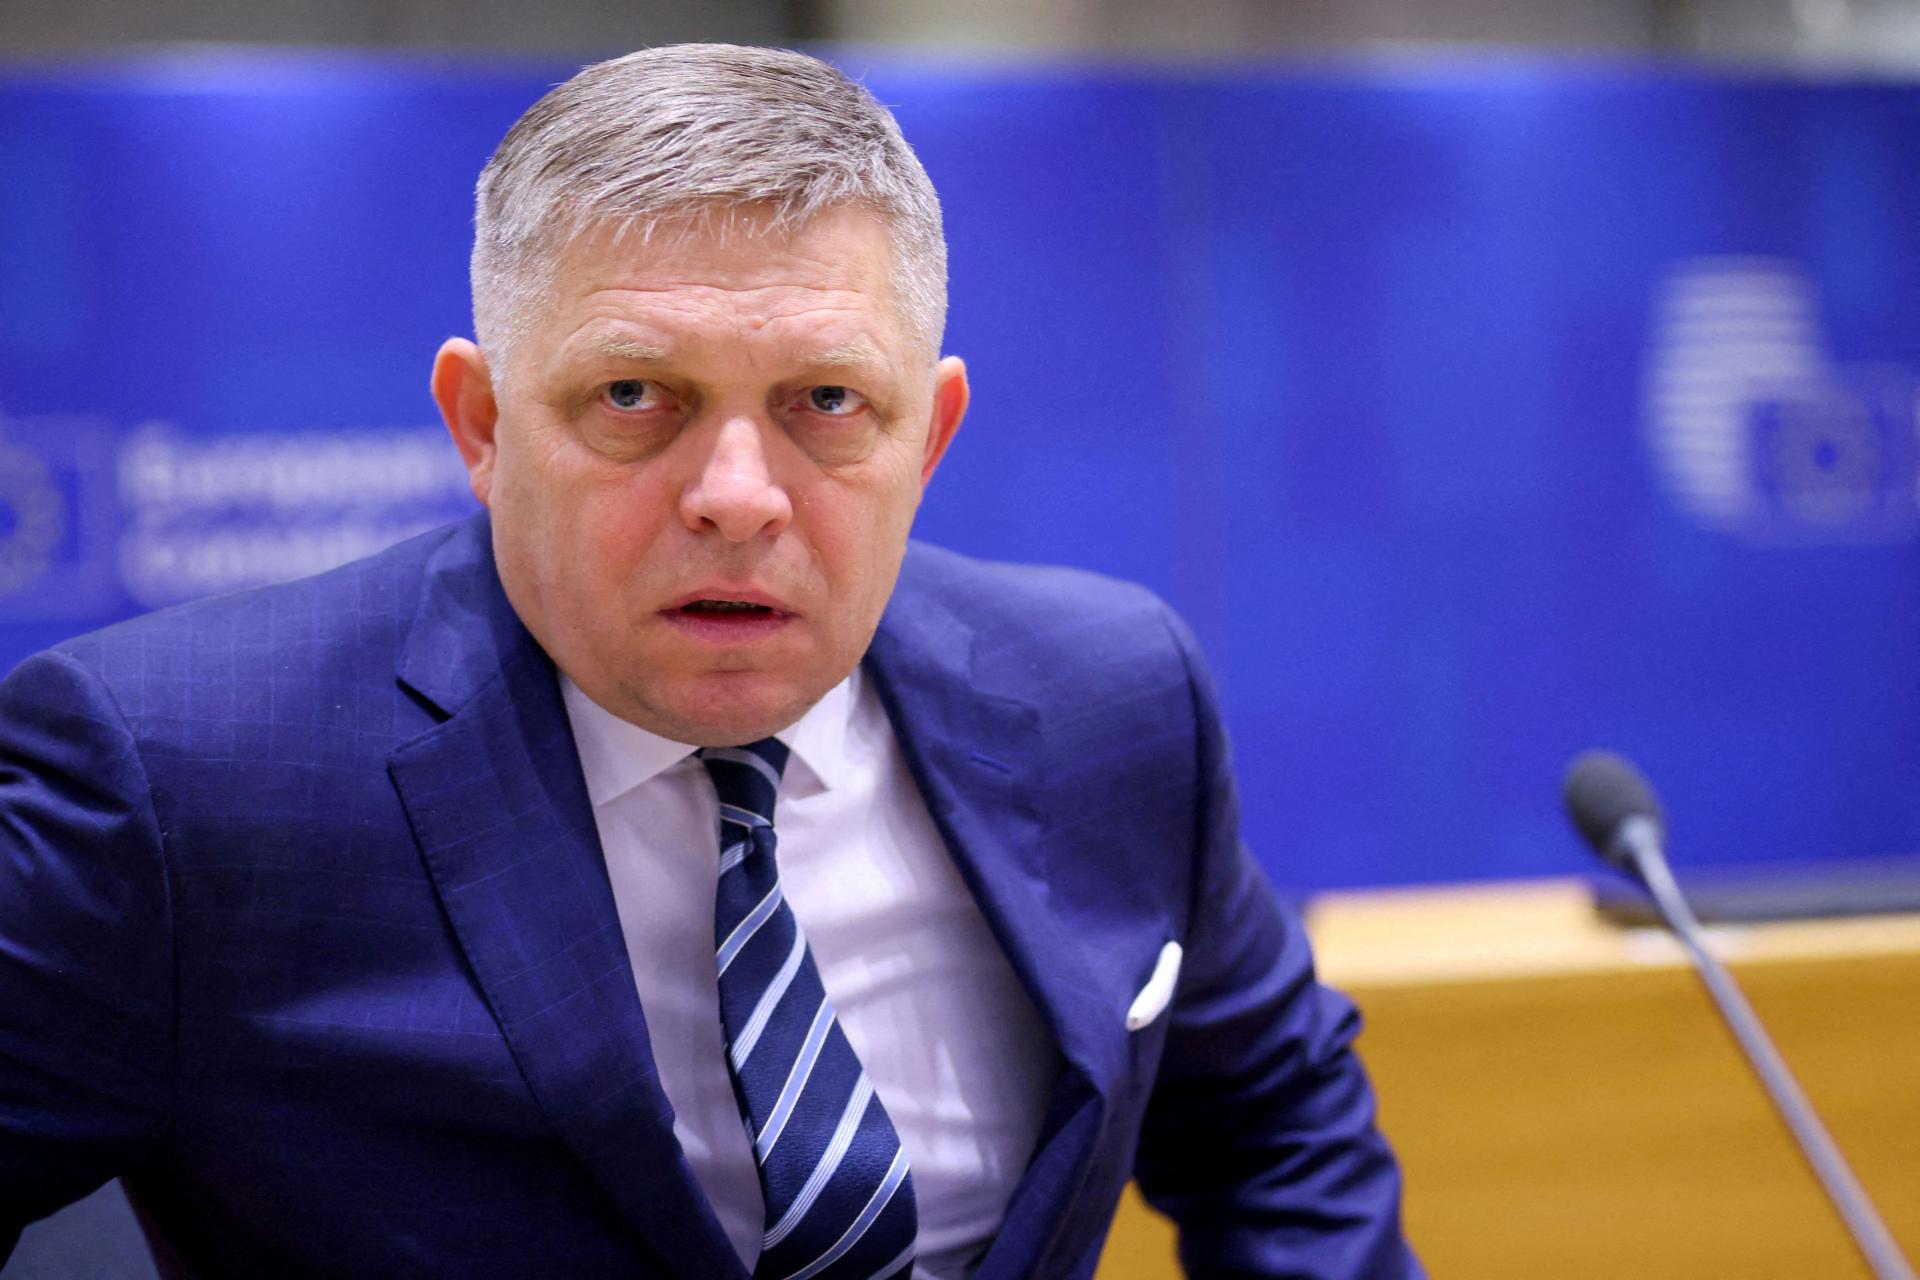 Slovensko by malo prispievať k formovaniu spoločných európskych stanovísk, vyhlásil Fico v prejave